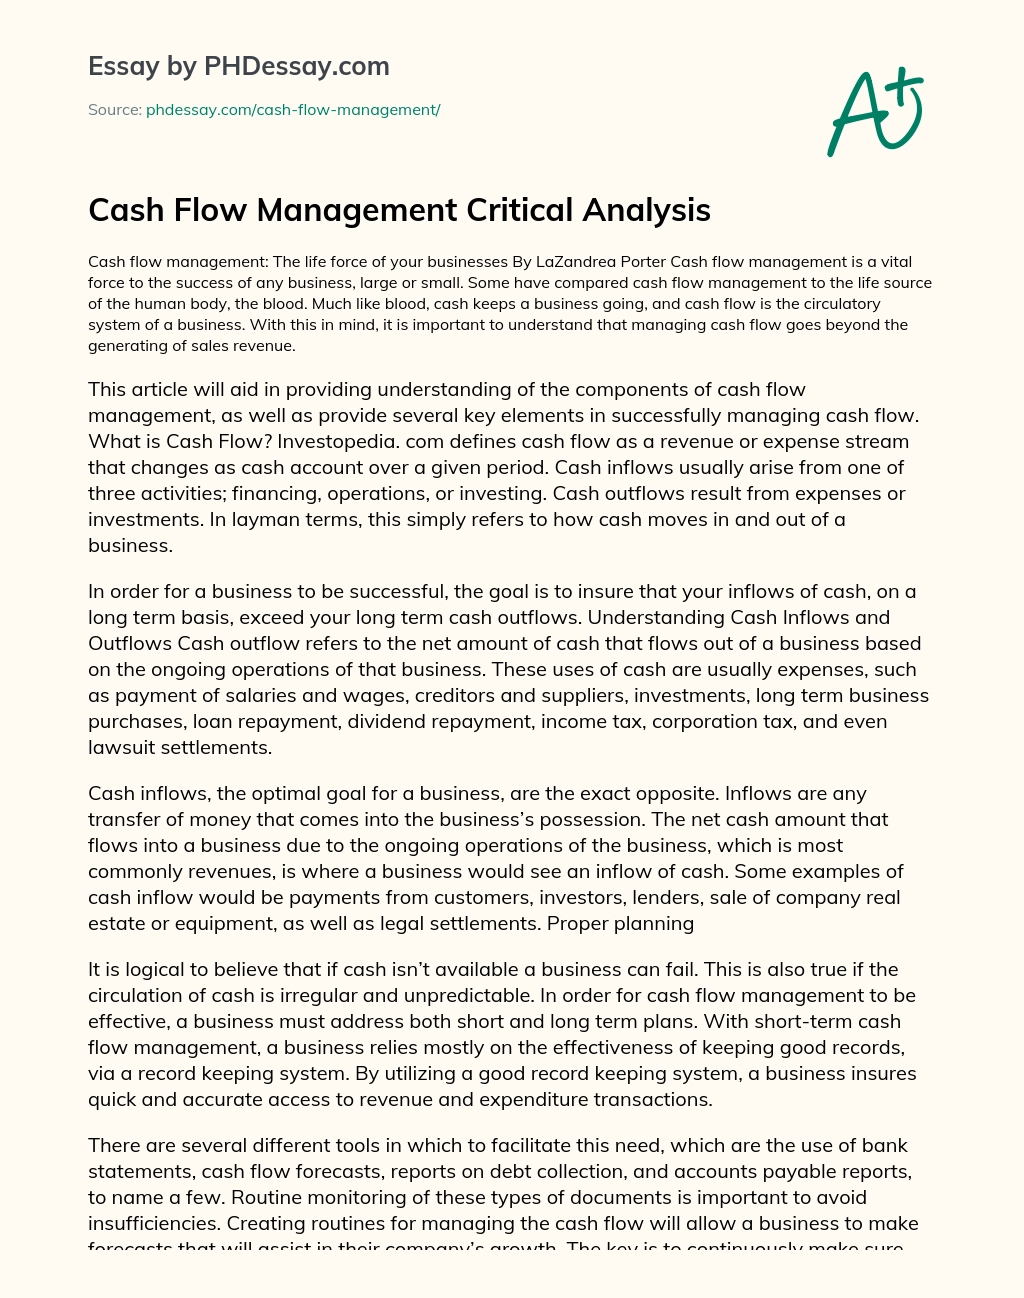 Cash Flow Management Critical Analysis essay